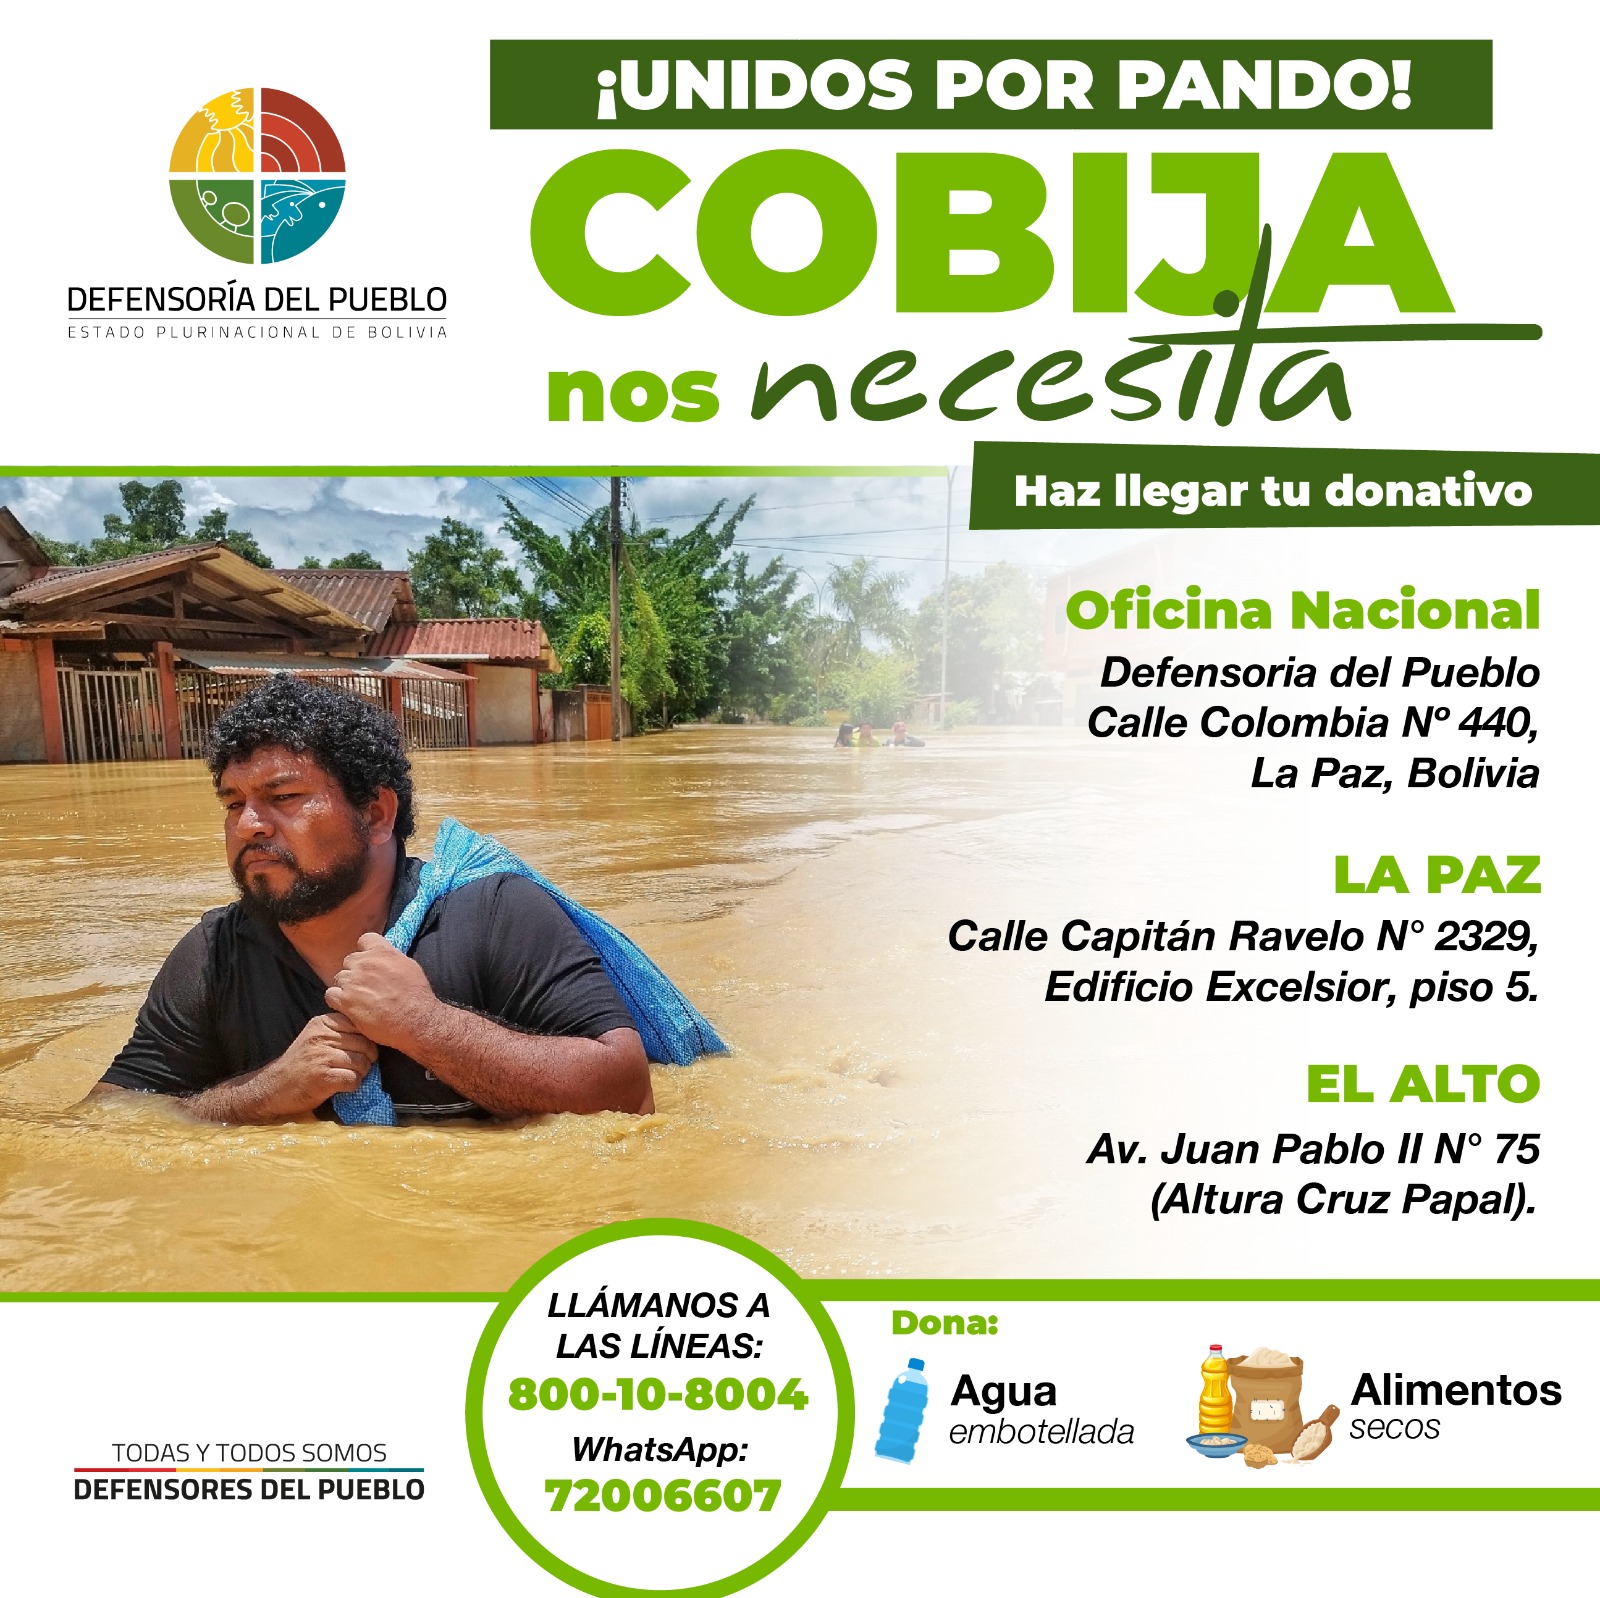 Defensoría del Pueblo inicia campaña solidaria “Unidos por Pando” para recolectar ayuda humanitaria para familias afectadas por inundaciones en Cobija